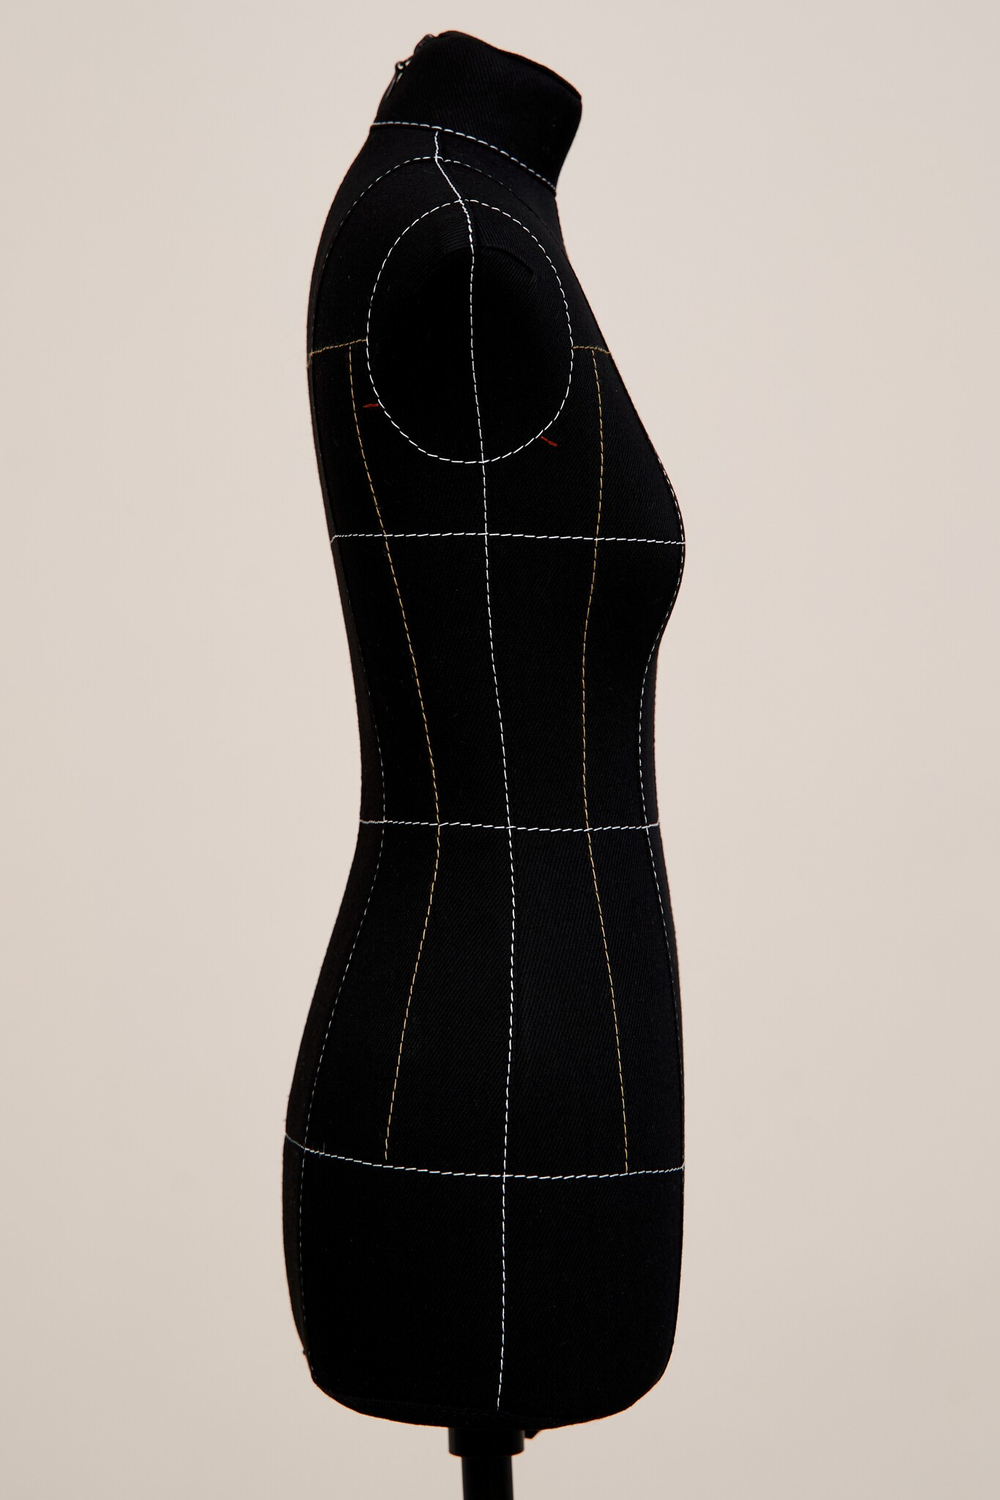 Масштабный манекен Бетти, комплект Премиум, с разметкой, размер 1:2 (42), черный